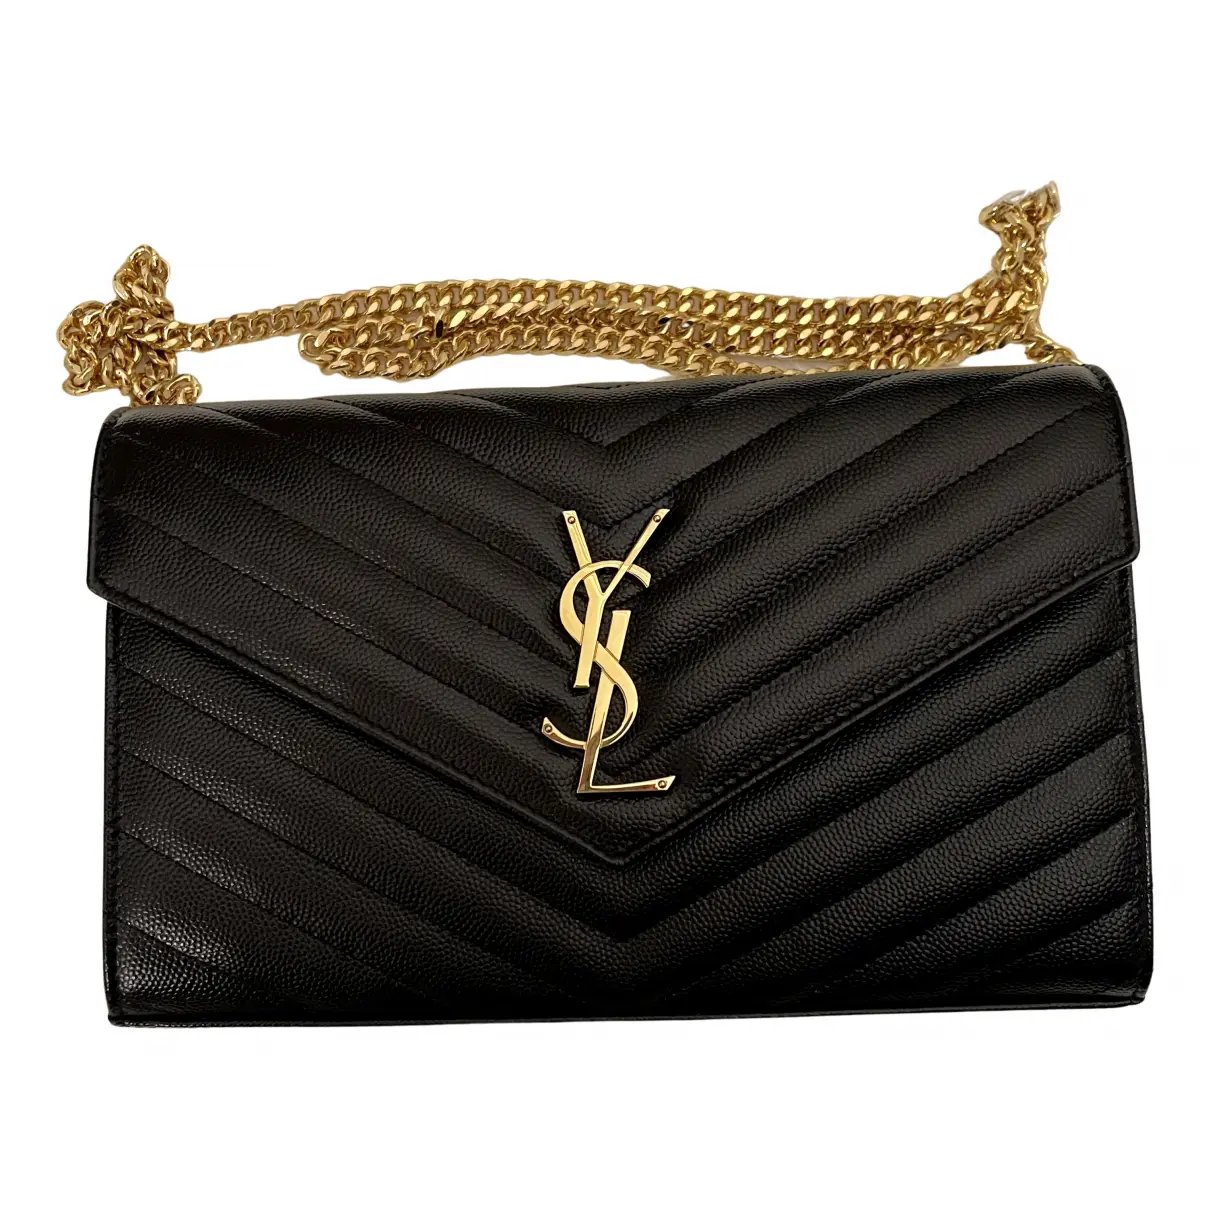 Portefeuille enveloppe leather handbag Saint Laurent